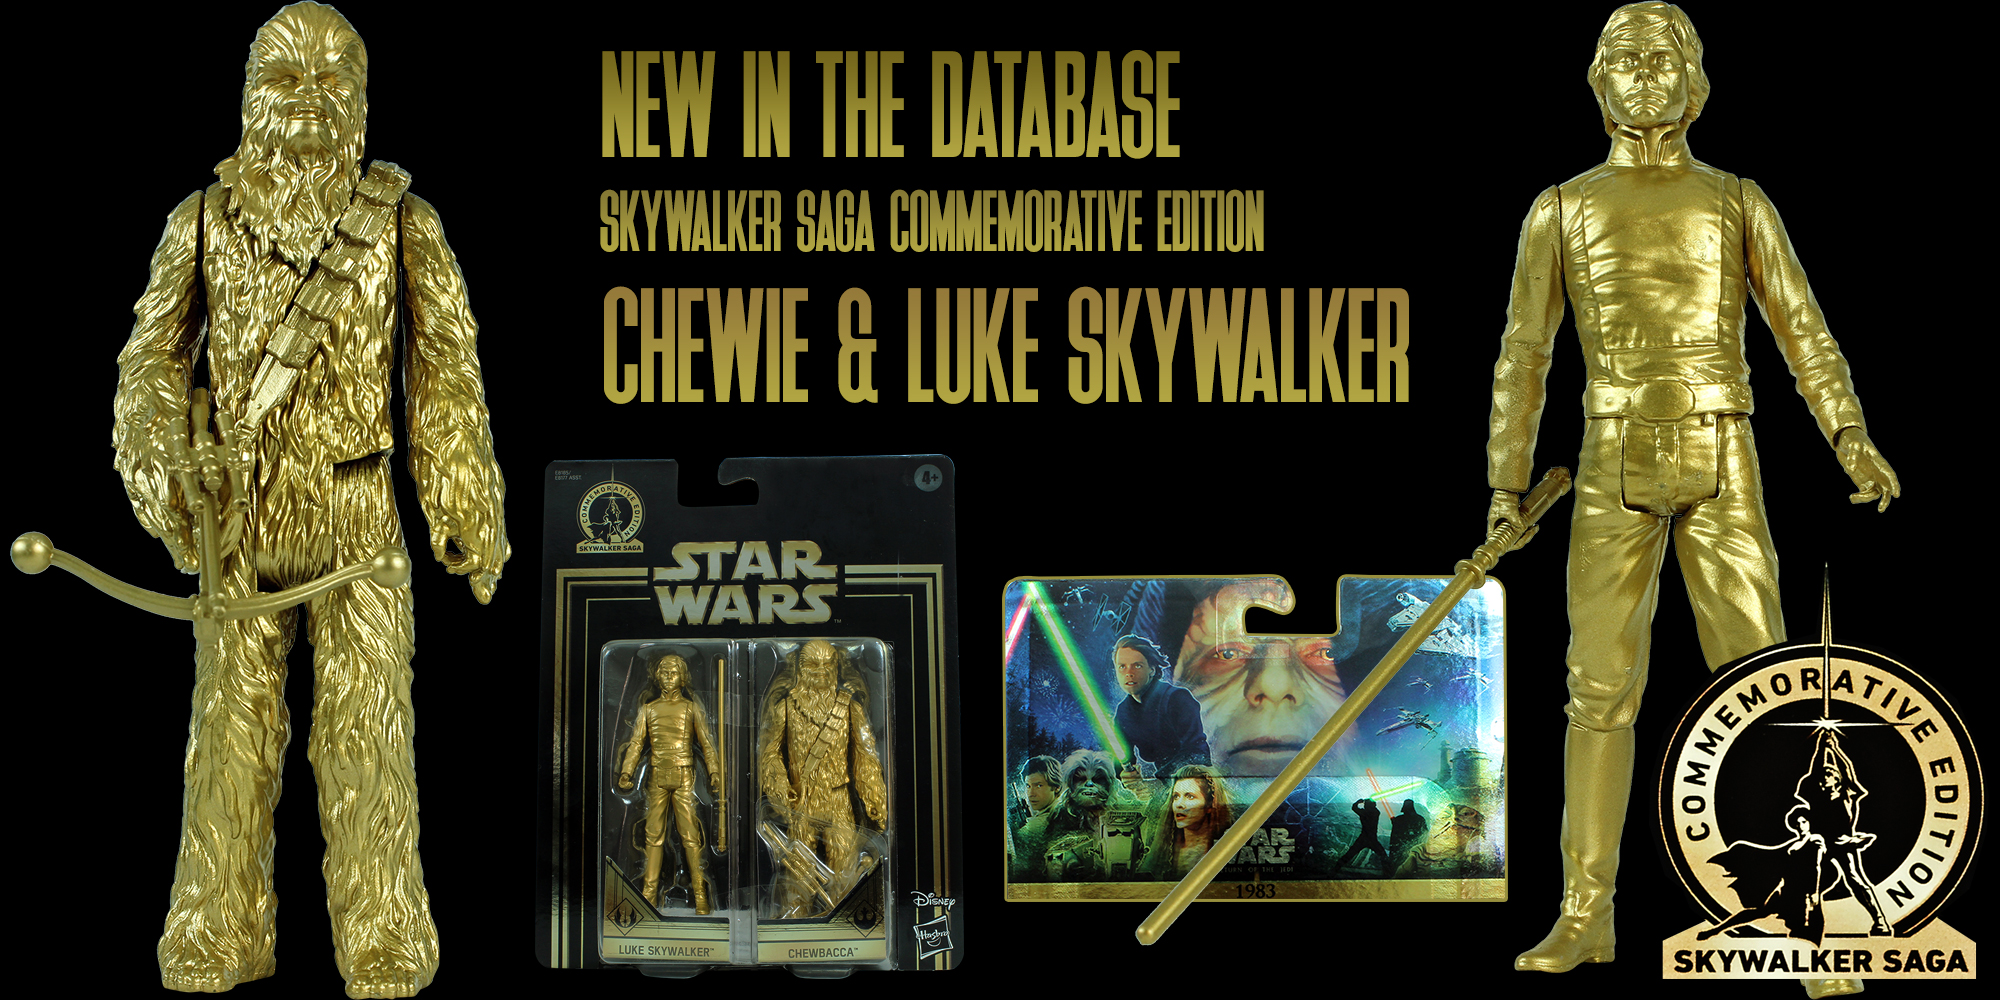 Skywalker Saga Collection